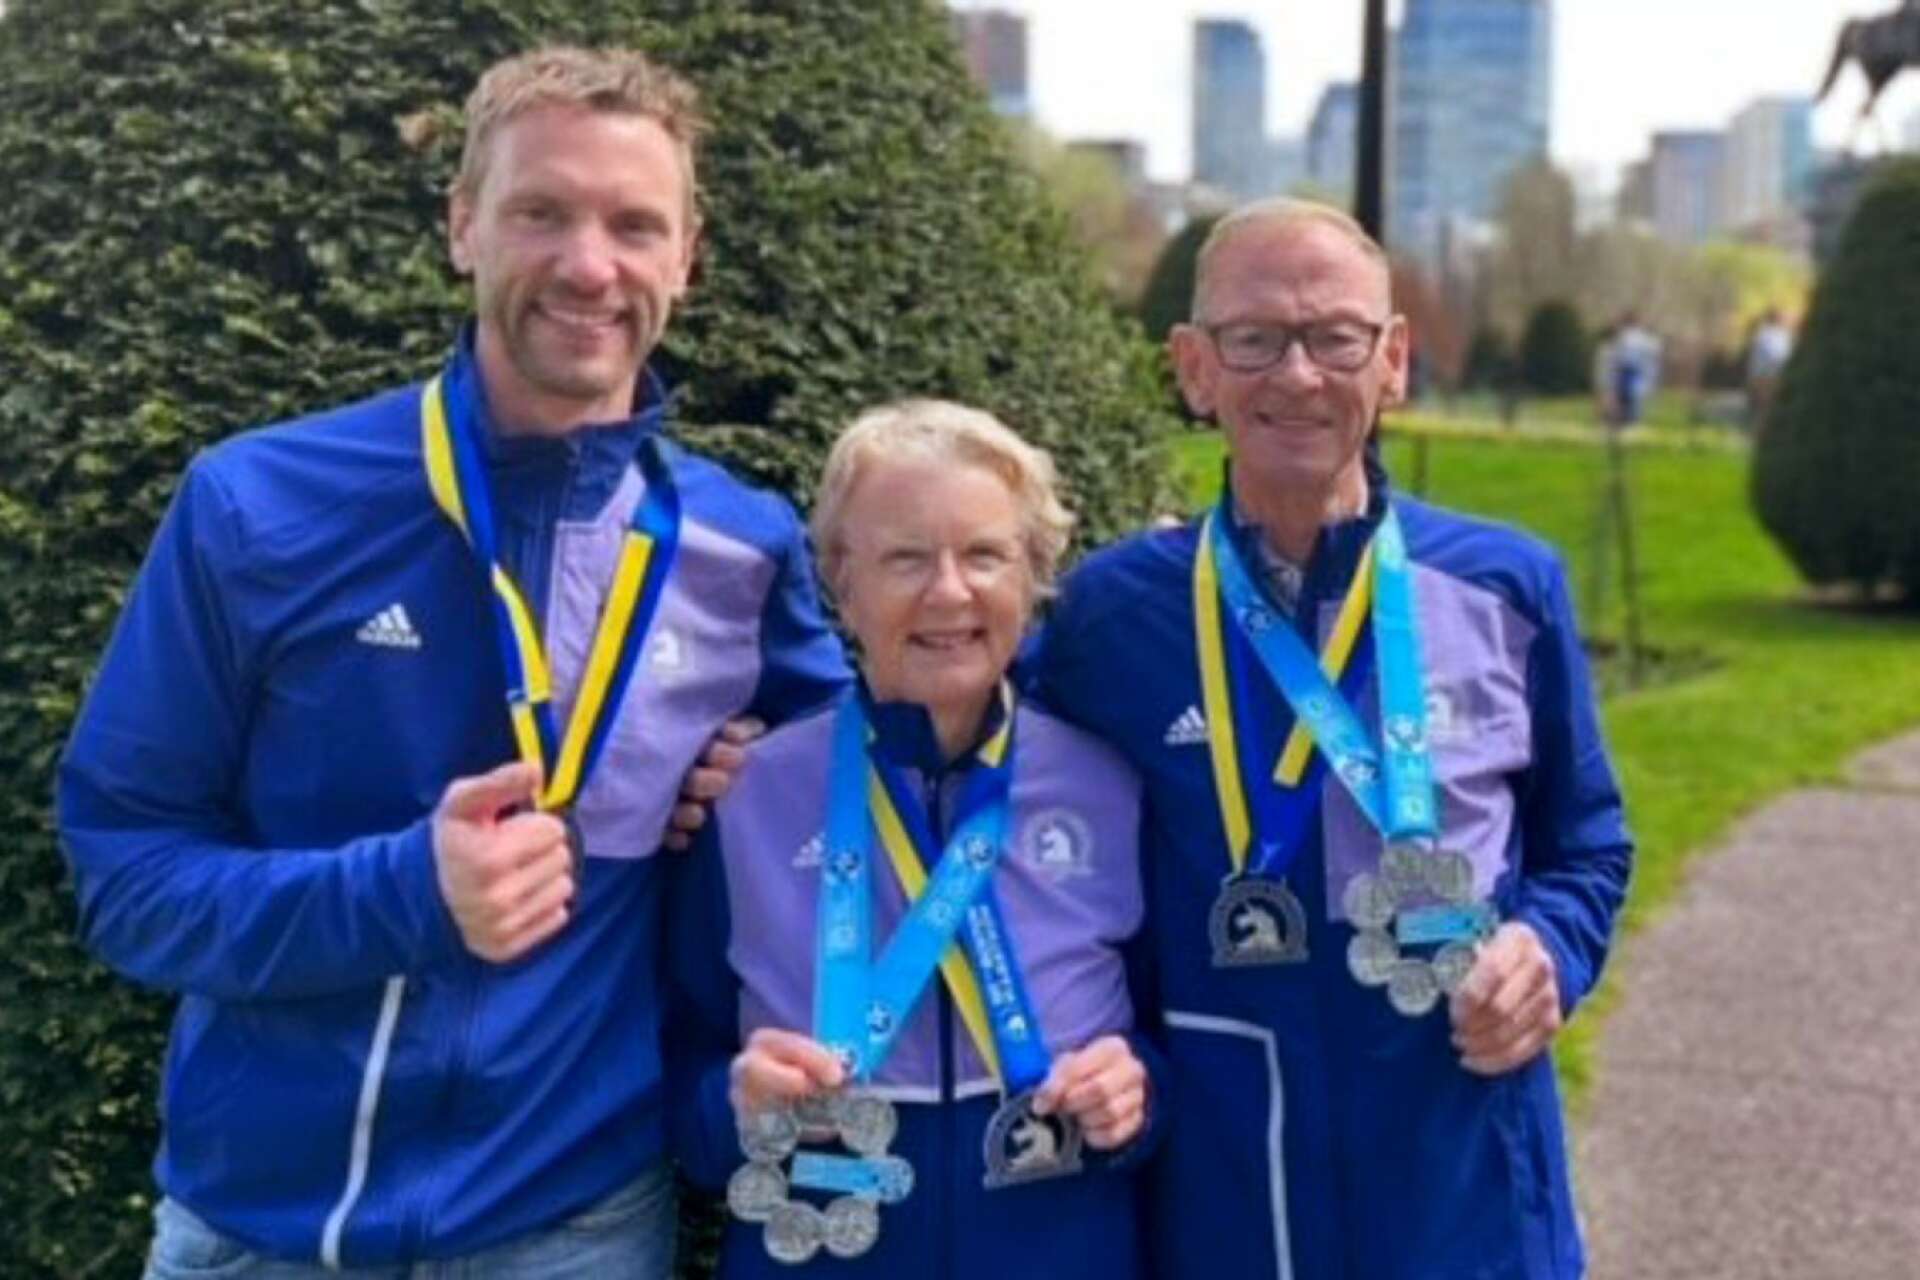 Boston var Erik Westerlinds andra maratonlopp. Föräldrarna Lennart Westerlind och Kristina Skar Westerlind är mer rutinerade, om det skvallrar inte minst medaljskörden.